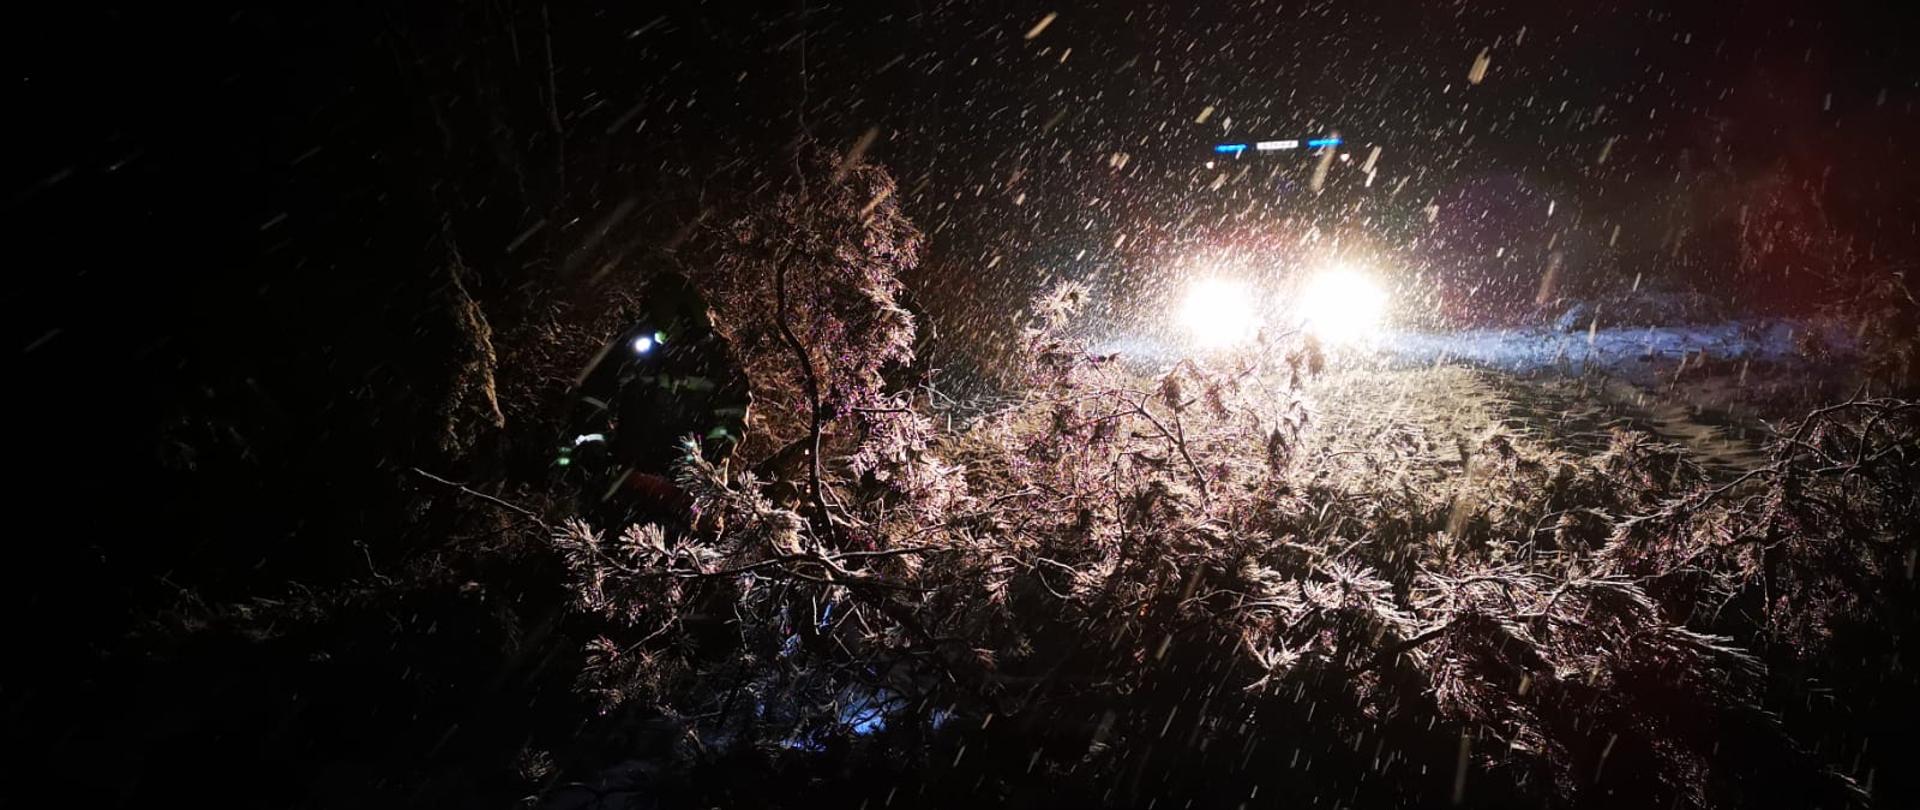 Zdjęcie wykonane w nocy podczas intensywnych opadów śniegu. W tle widoczne światła samochodu pożarniczego oświetlające pole pracy ratowników przy usuwaniu powalonego drzewa tarasującego przejazd na drodze. Na pierwszym planie podświetlona sylwetka leżących gałęzi a lekko po lewej stronie strażak tnący drzewo na mniejsze odcinki. 